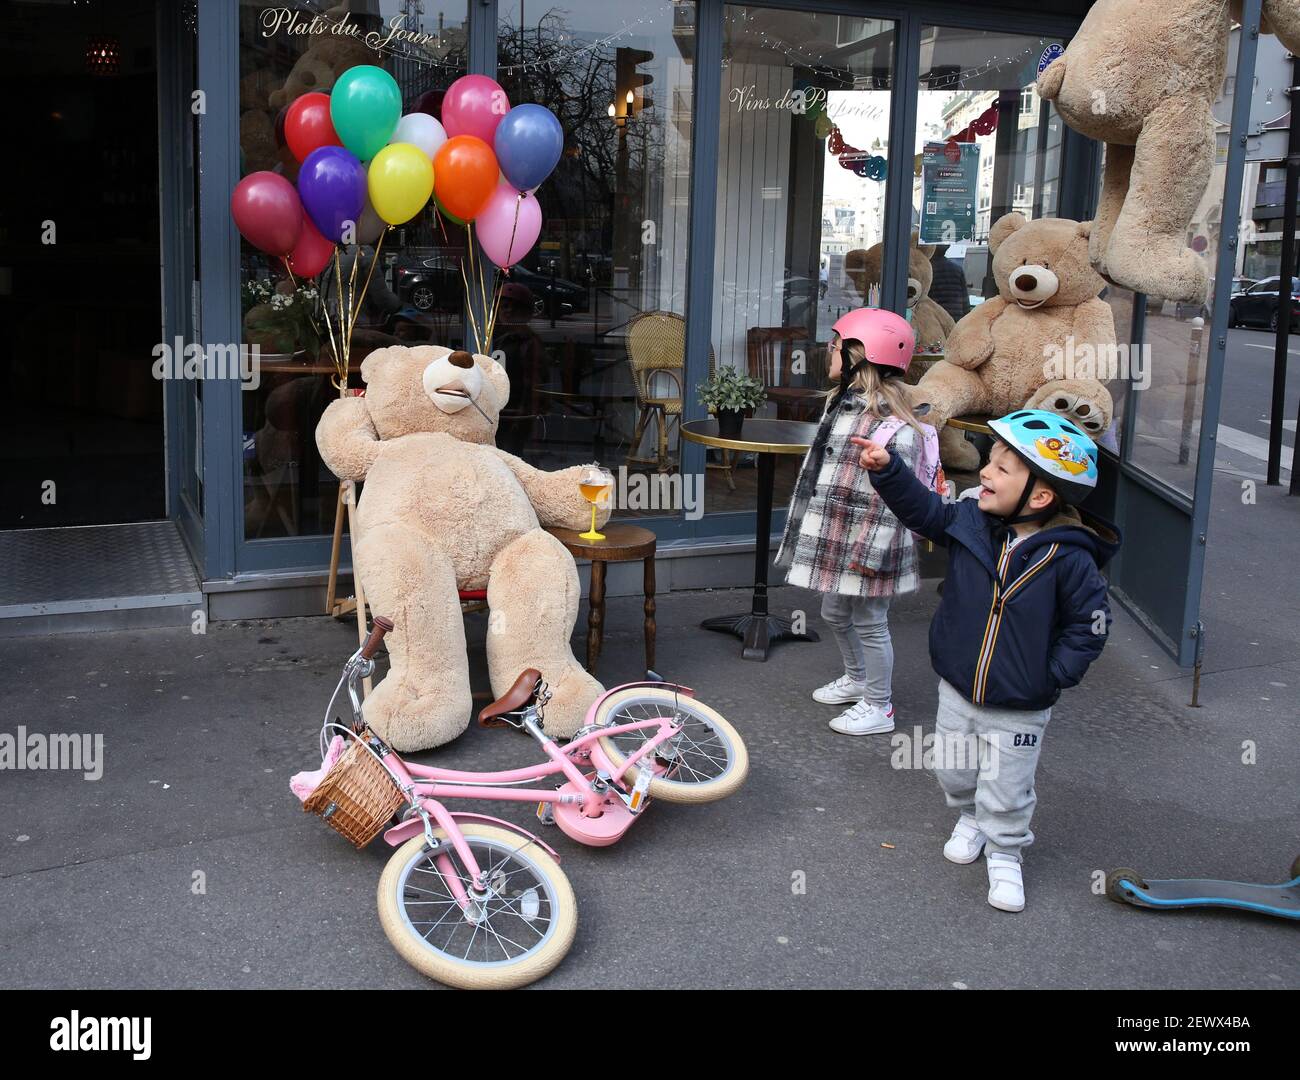 Paris, les ours en peluche géants sont vus dans un restaurant qui offre des  services à emporter à Paris. Restaurants. 30 octobre 2020. Les enfants  jouent avec un ours en peluche géant